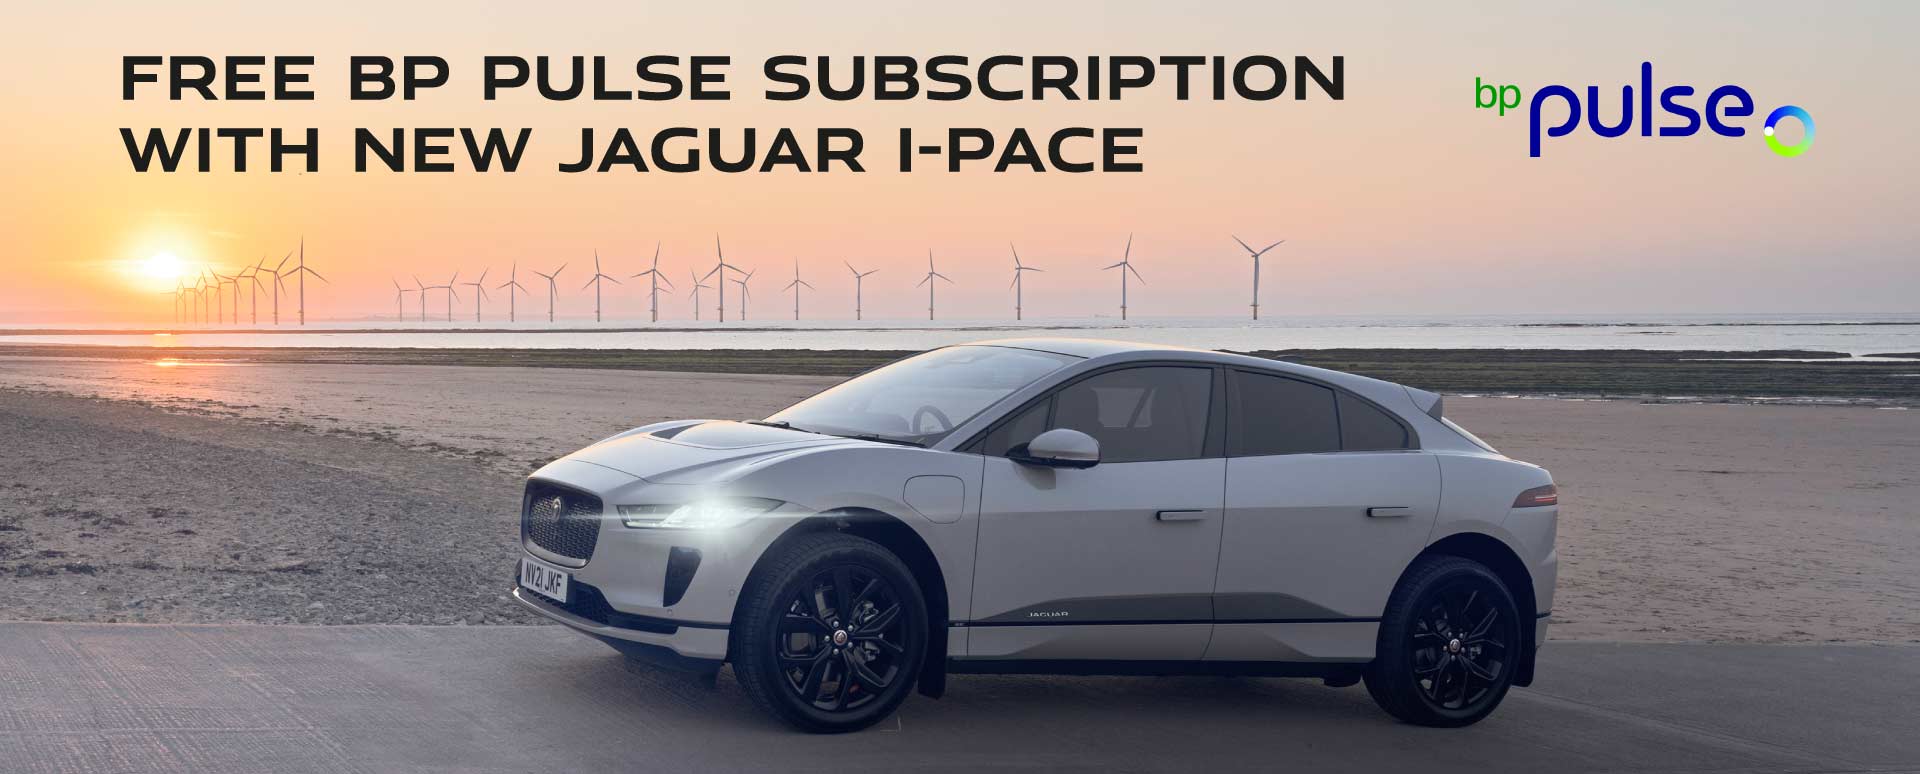 Jaguar I-PACE Free BP Pulse Subscription